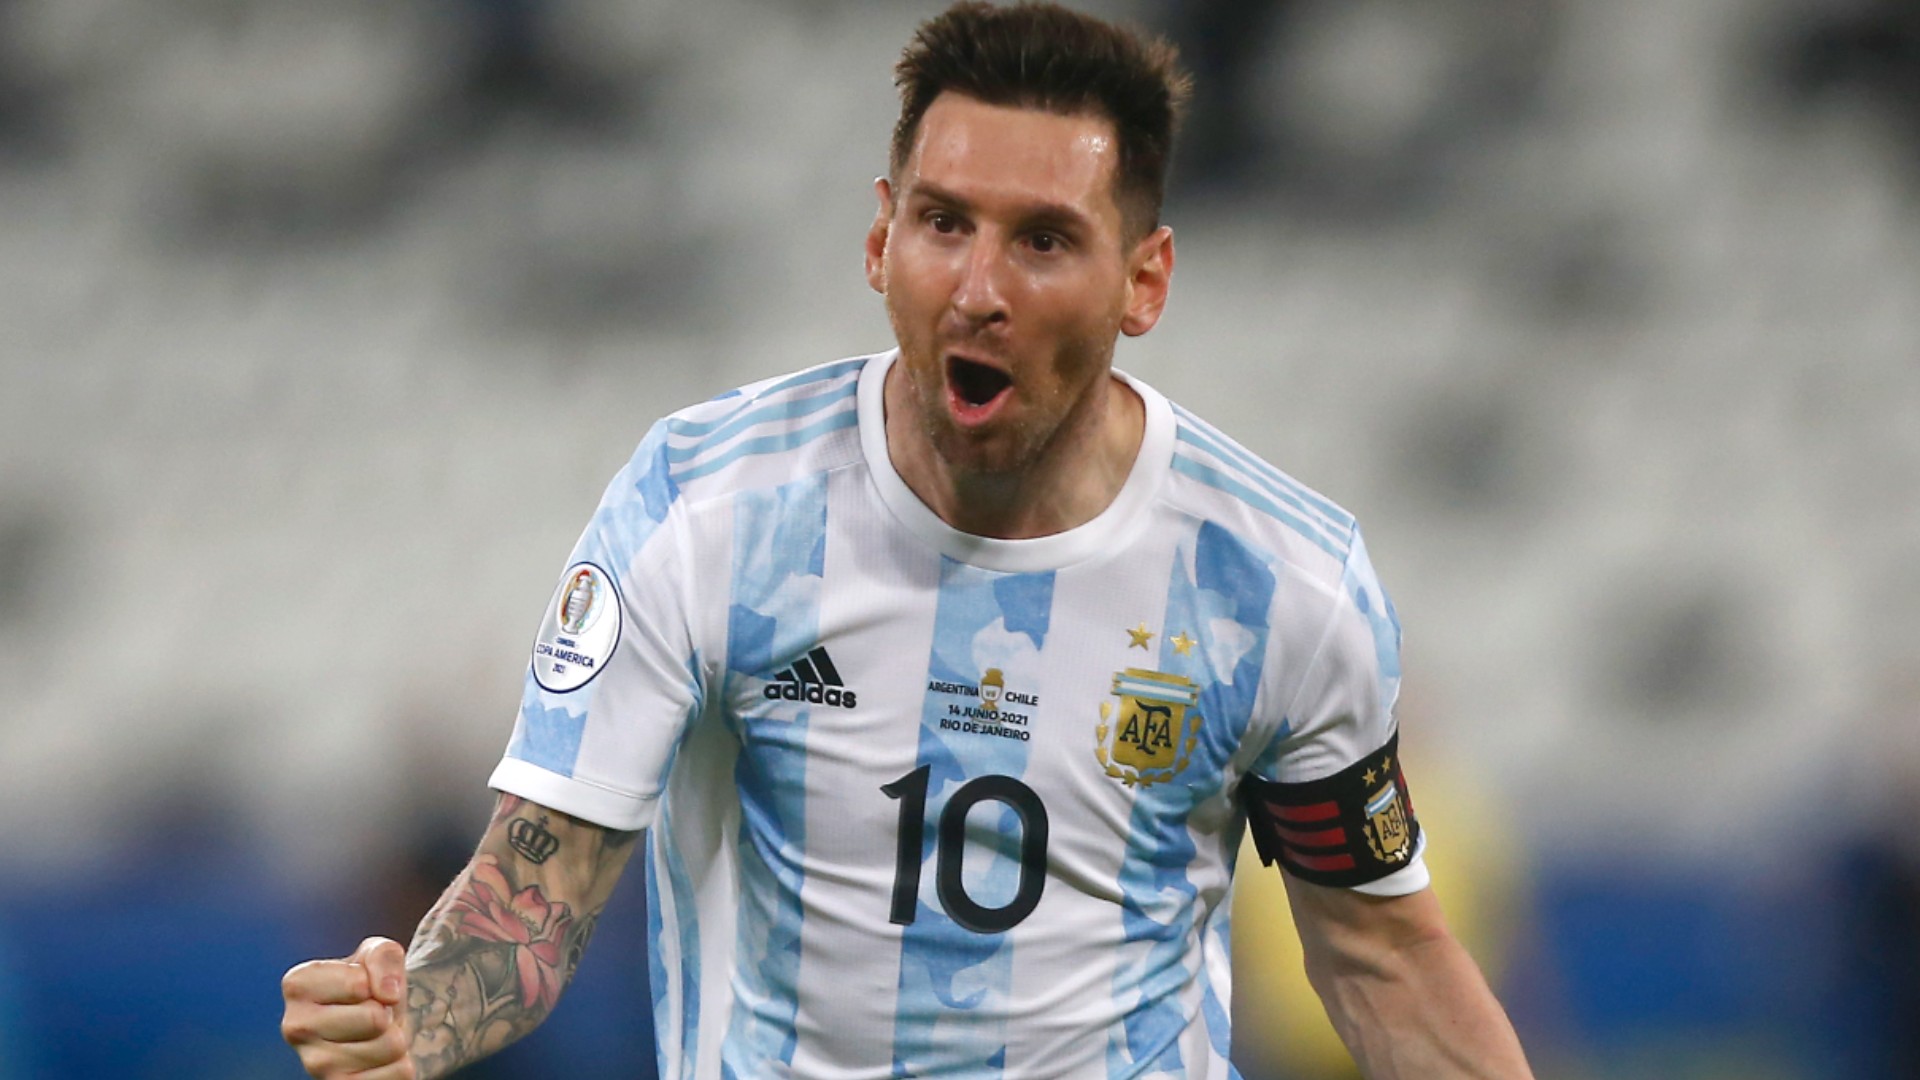 Hình nền Messi: Đẹp, tuyệt vời, ấn tượng là những từ gì mà bạn có thể cảm nhận khi ngắm nhìn bức hình nền về siêu sao bóng đá Lionel Messi. Với nhiều kiểu ảnh độc đáo, đẹp mắt chắc chắn sẽ khiến ai nhìn vào đều phải \